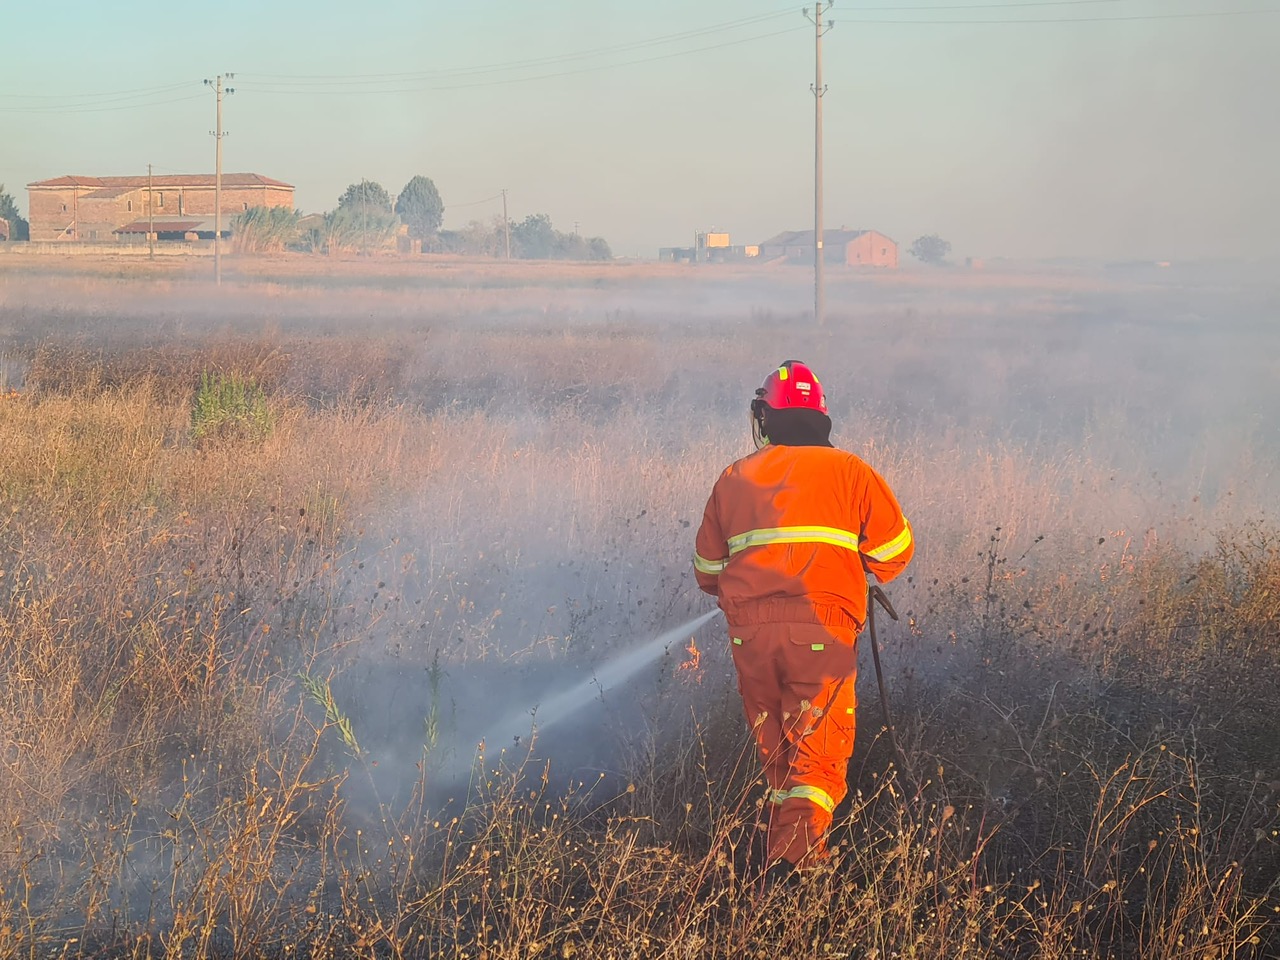 Antincendio boschivo,26 gli interventi nella provincia di Benevento